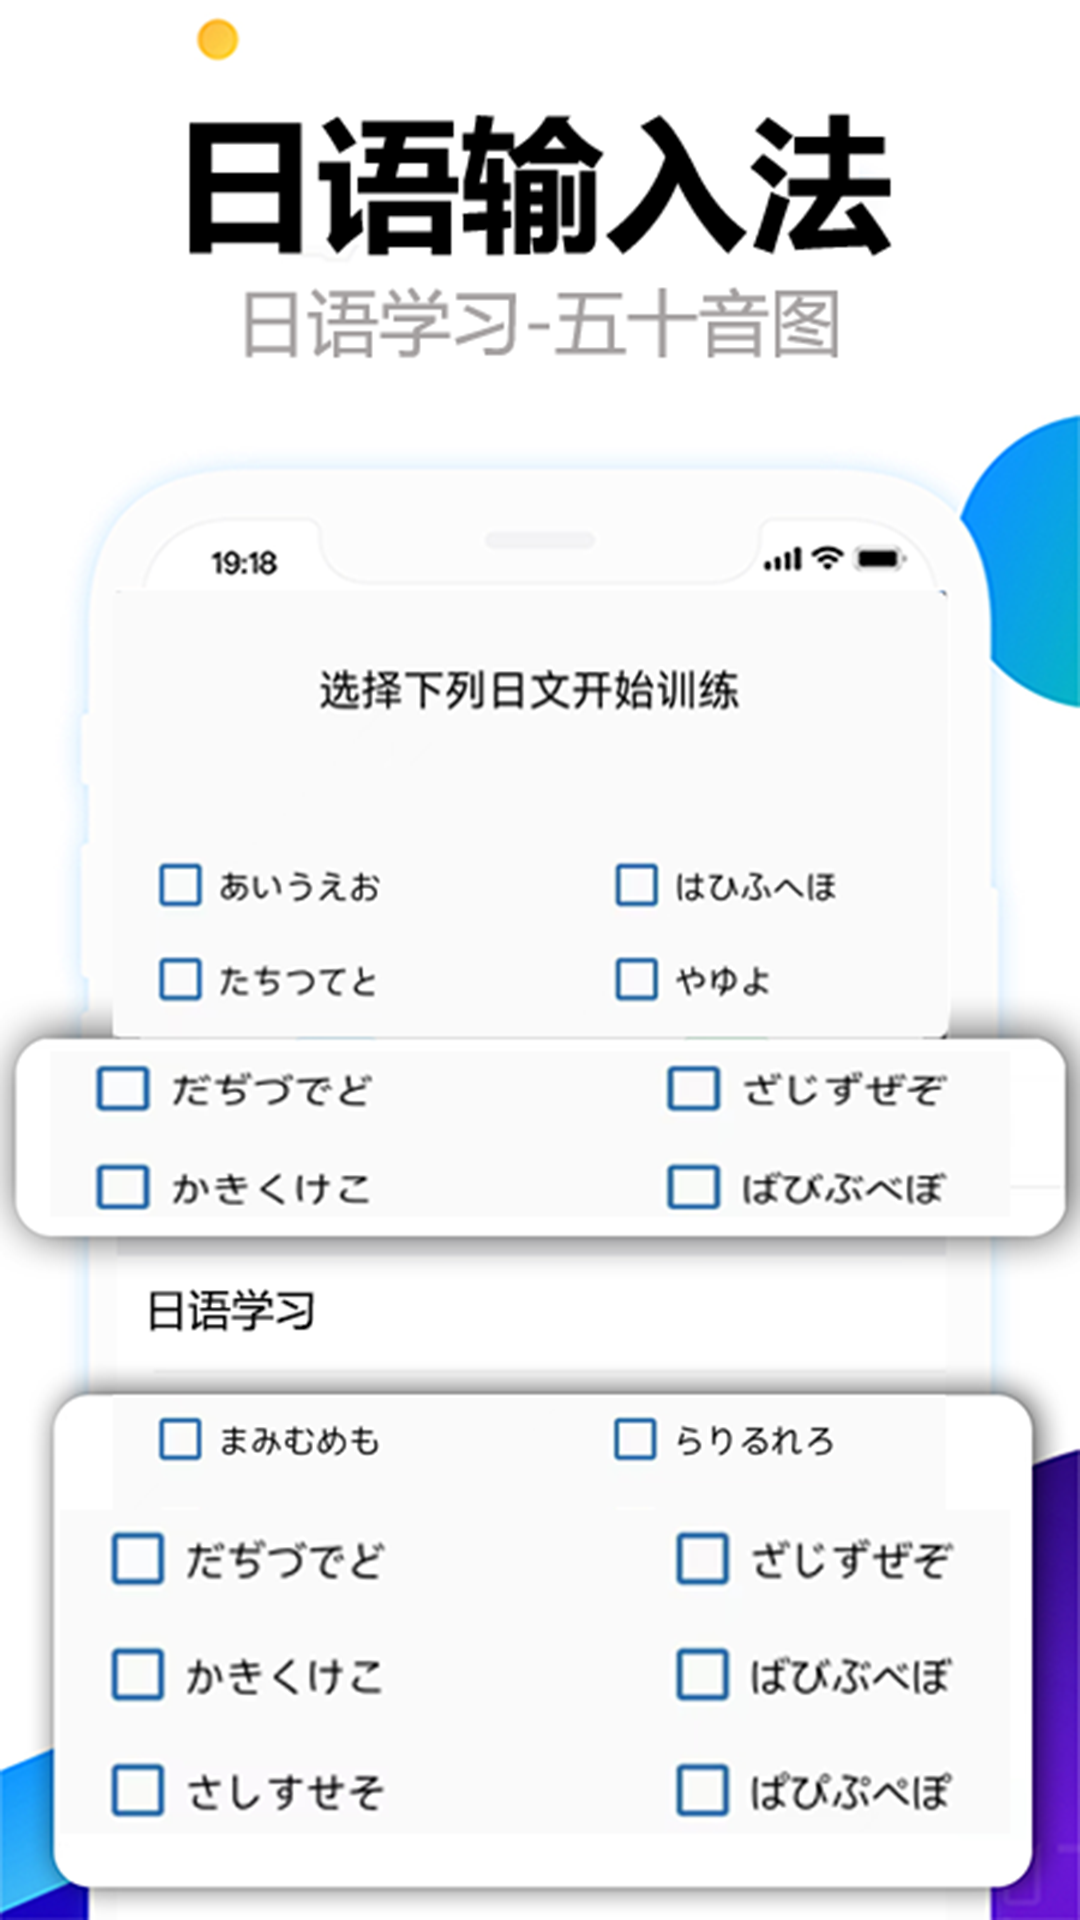 日语输入法五十音图app官方版图片1